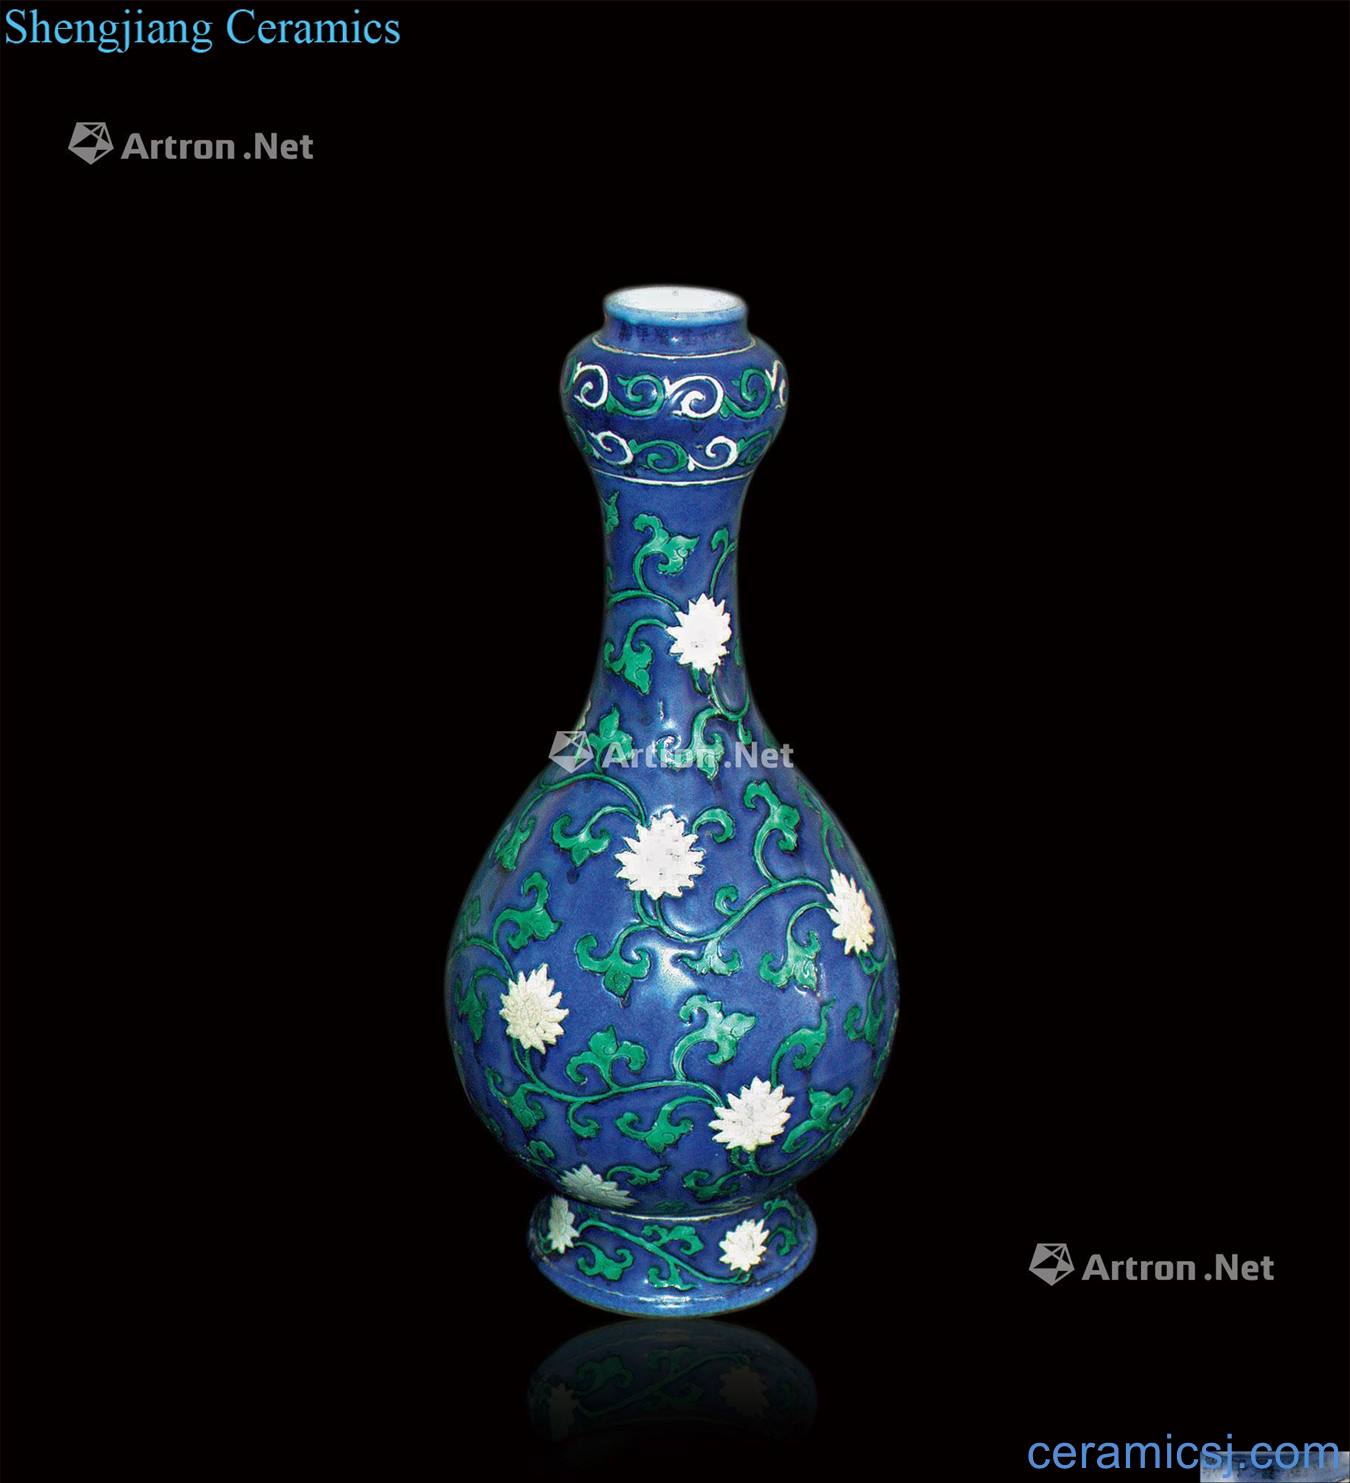 Ming plain tricolour flower bottles of garlic